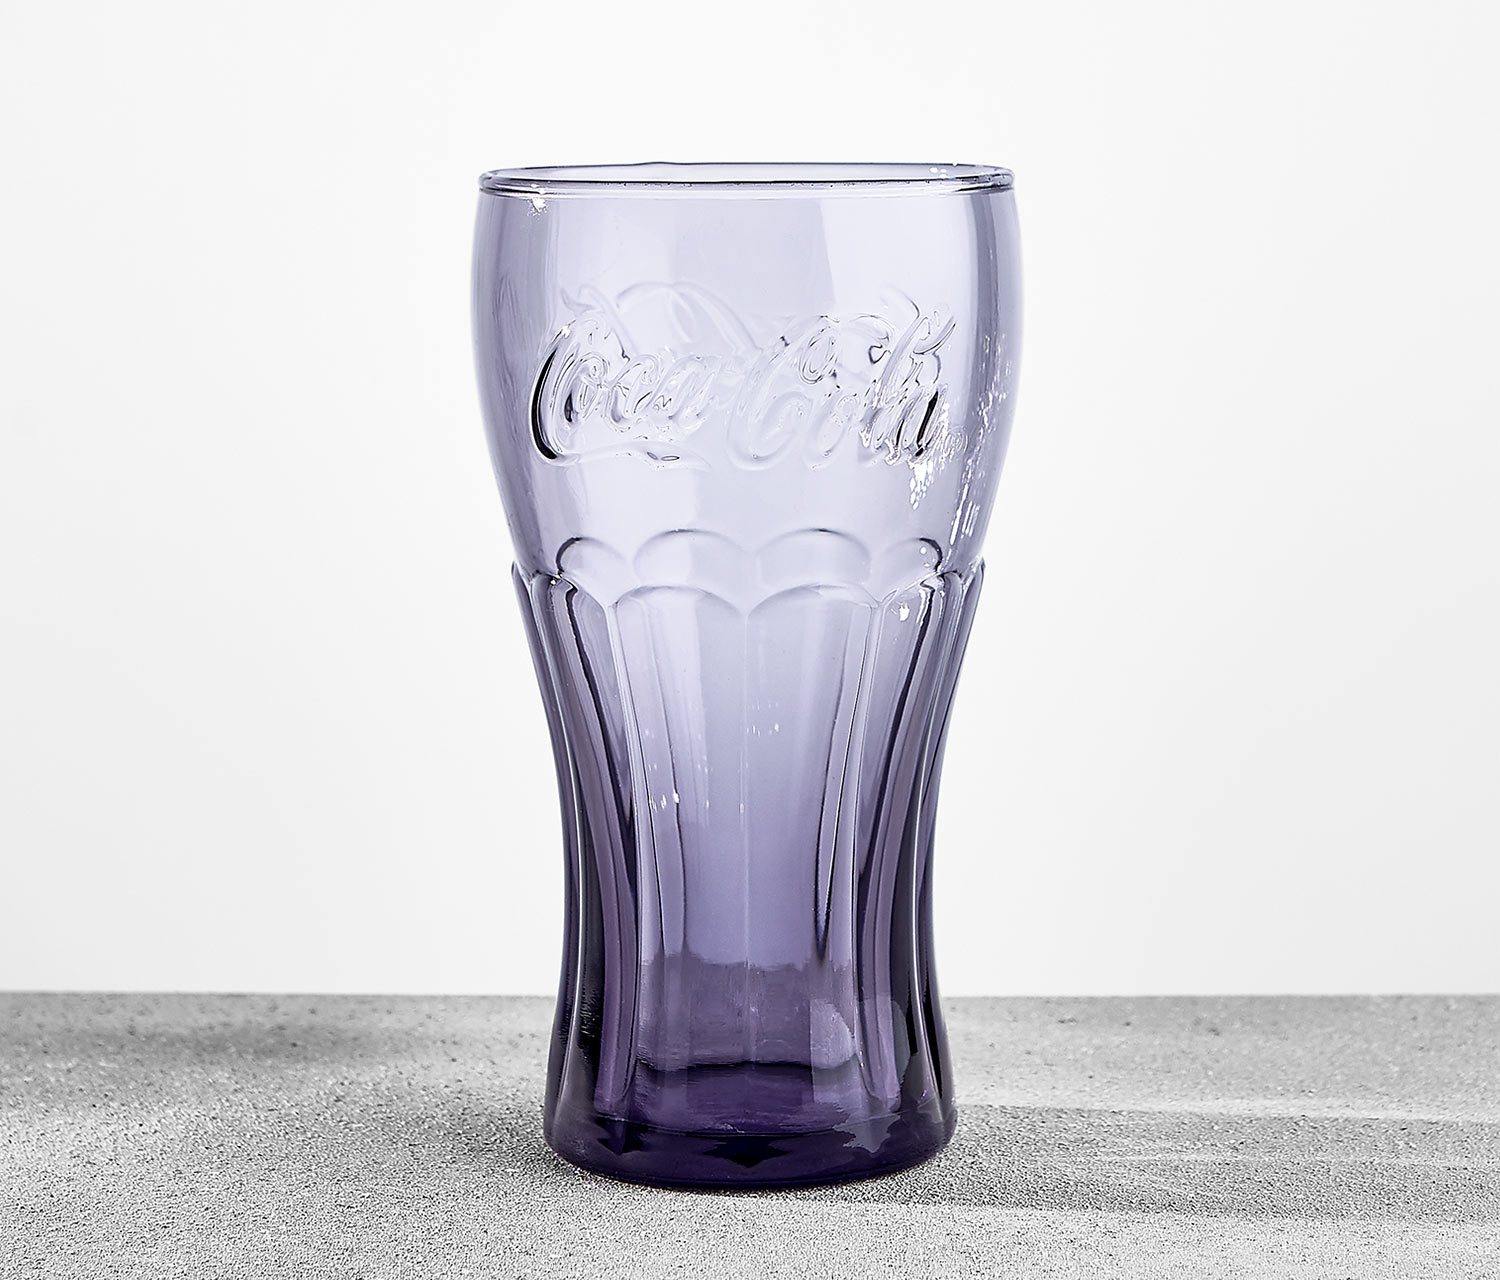 Coca-Cola Transparent Cup